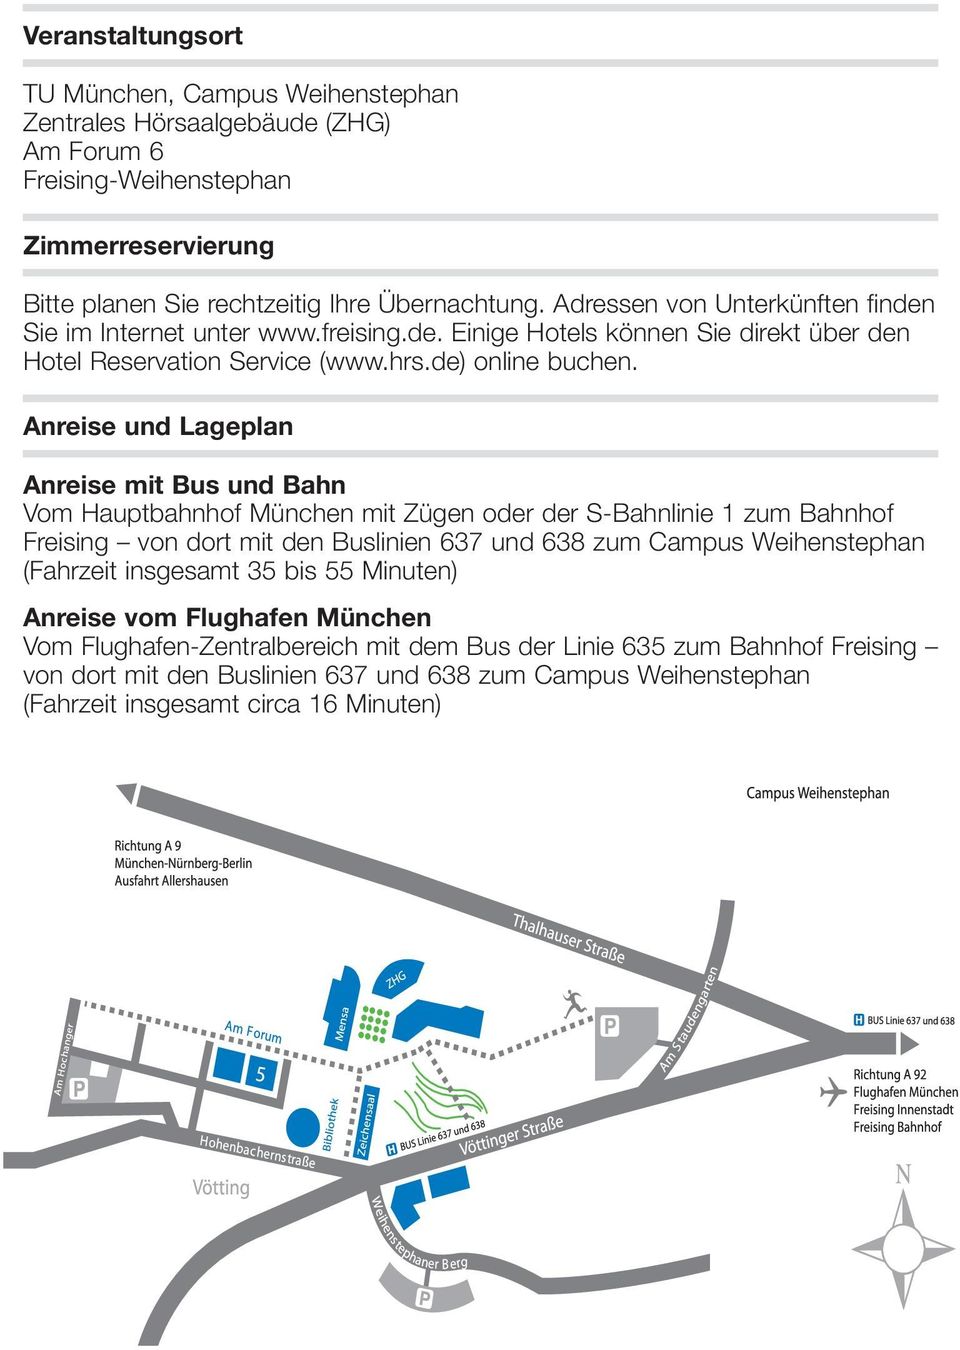 Anreise und Lageplan Anreise mit Bus und Bahn Vom Hauptbahnhof München mit Zügen oder der S-Bahnlinie 1 zum Bahnhof Freising von dort mit den Buslinien 637 und 638 zum Campus Weihenstephan